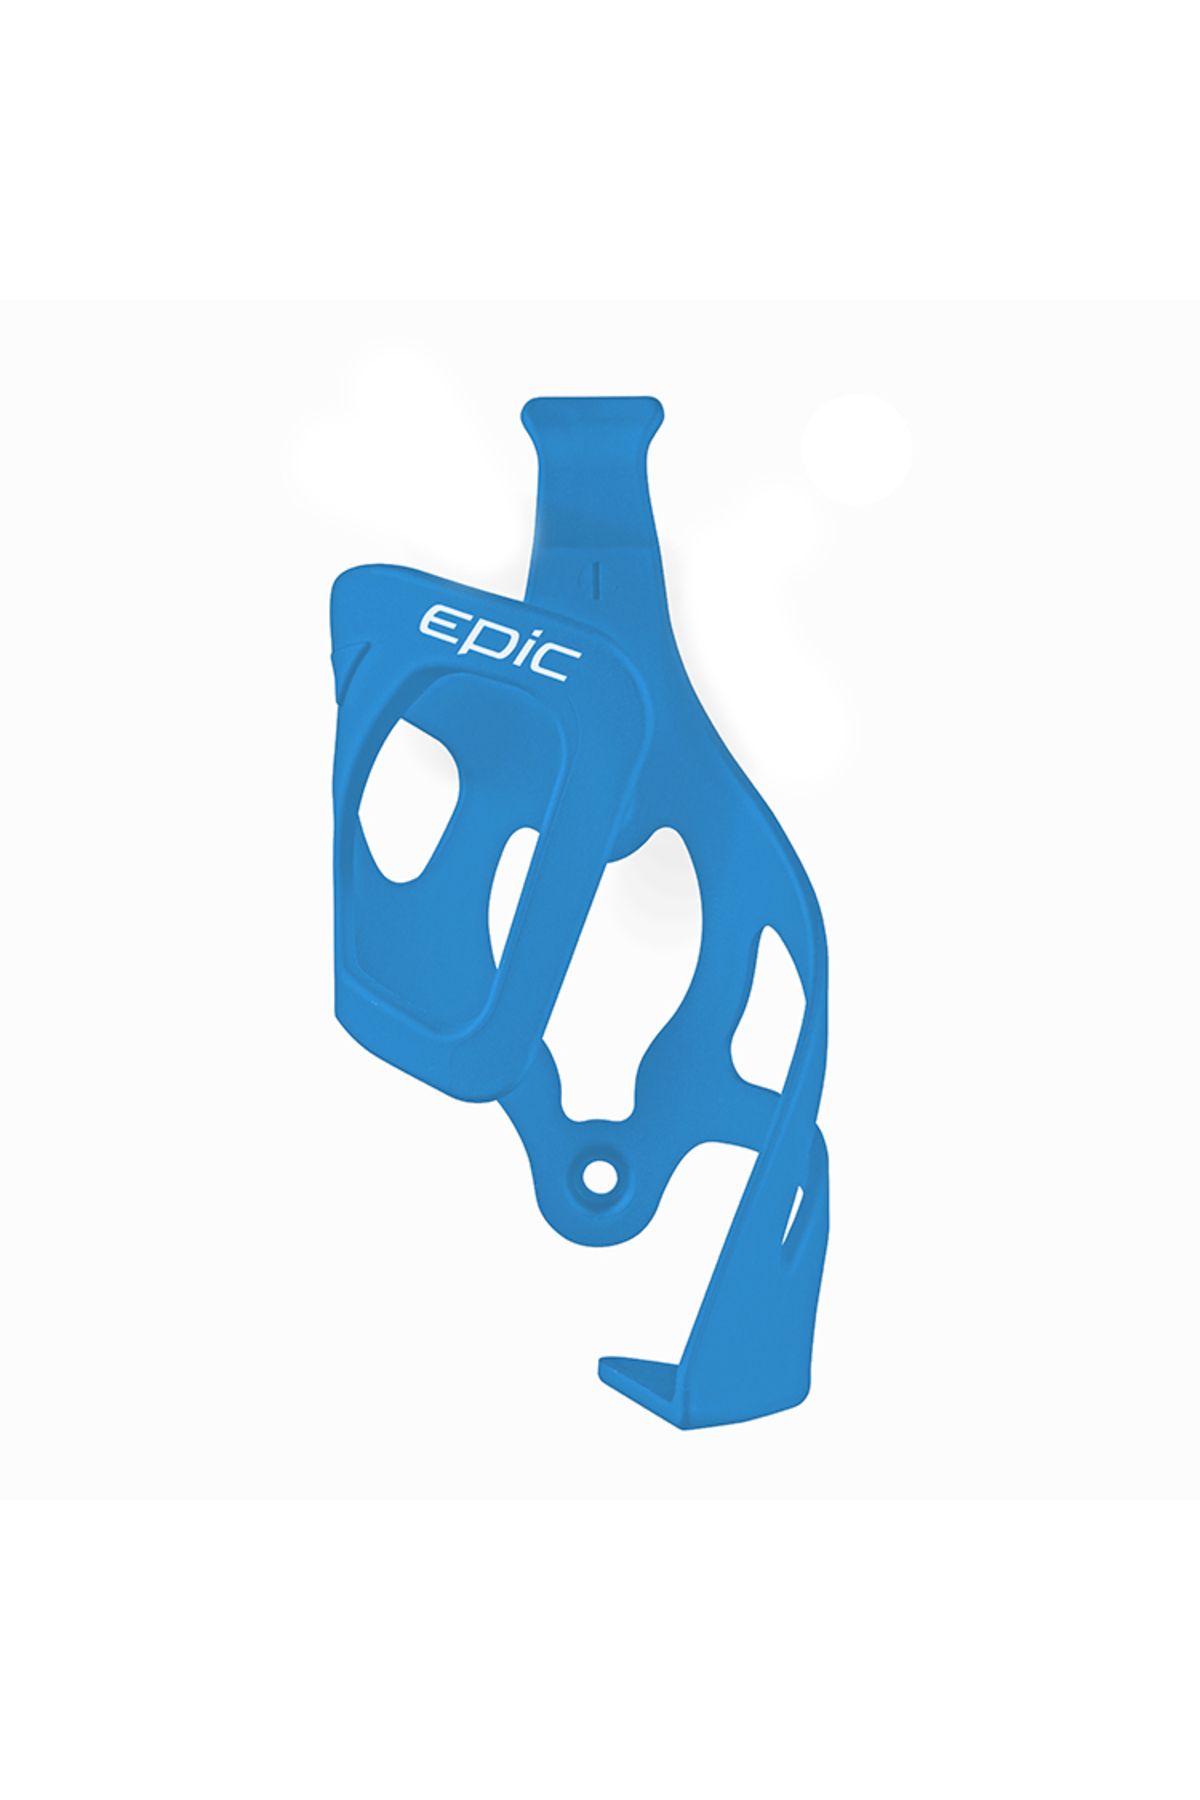 Epic Suluk Kafesi - Bce-38, Plastik, Kartlı, Mavi